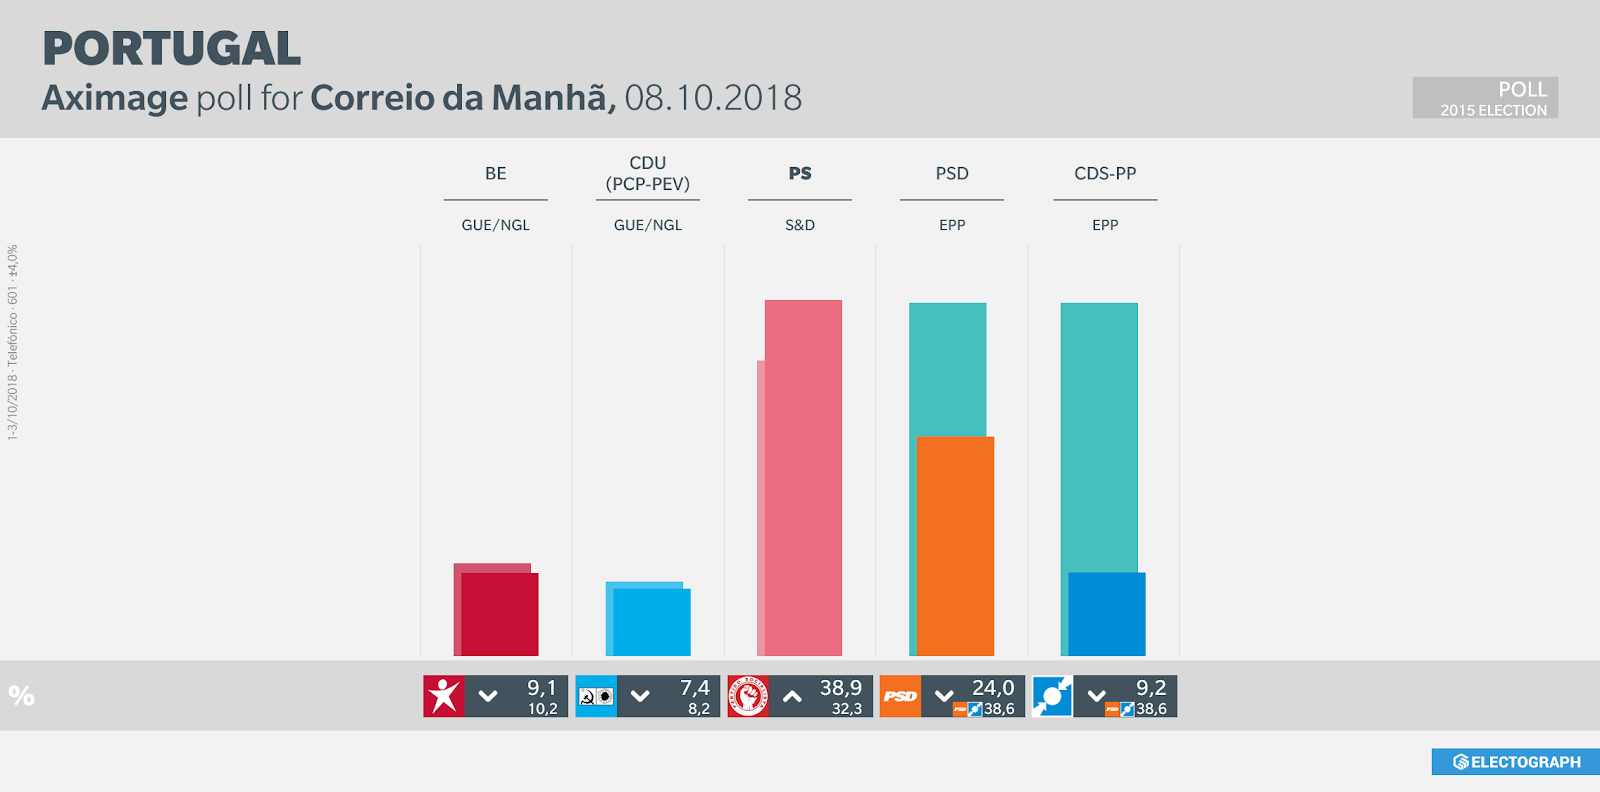 PORTUGAL: Aximage poll chart for Correio da Manhã, October 2018